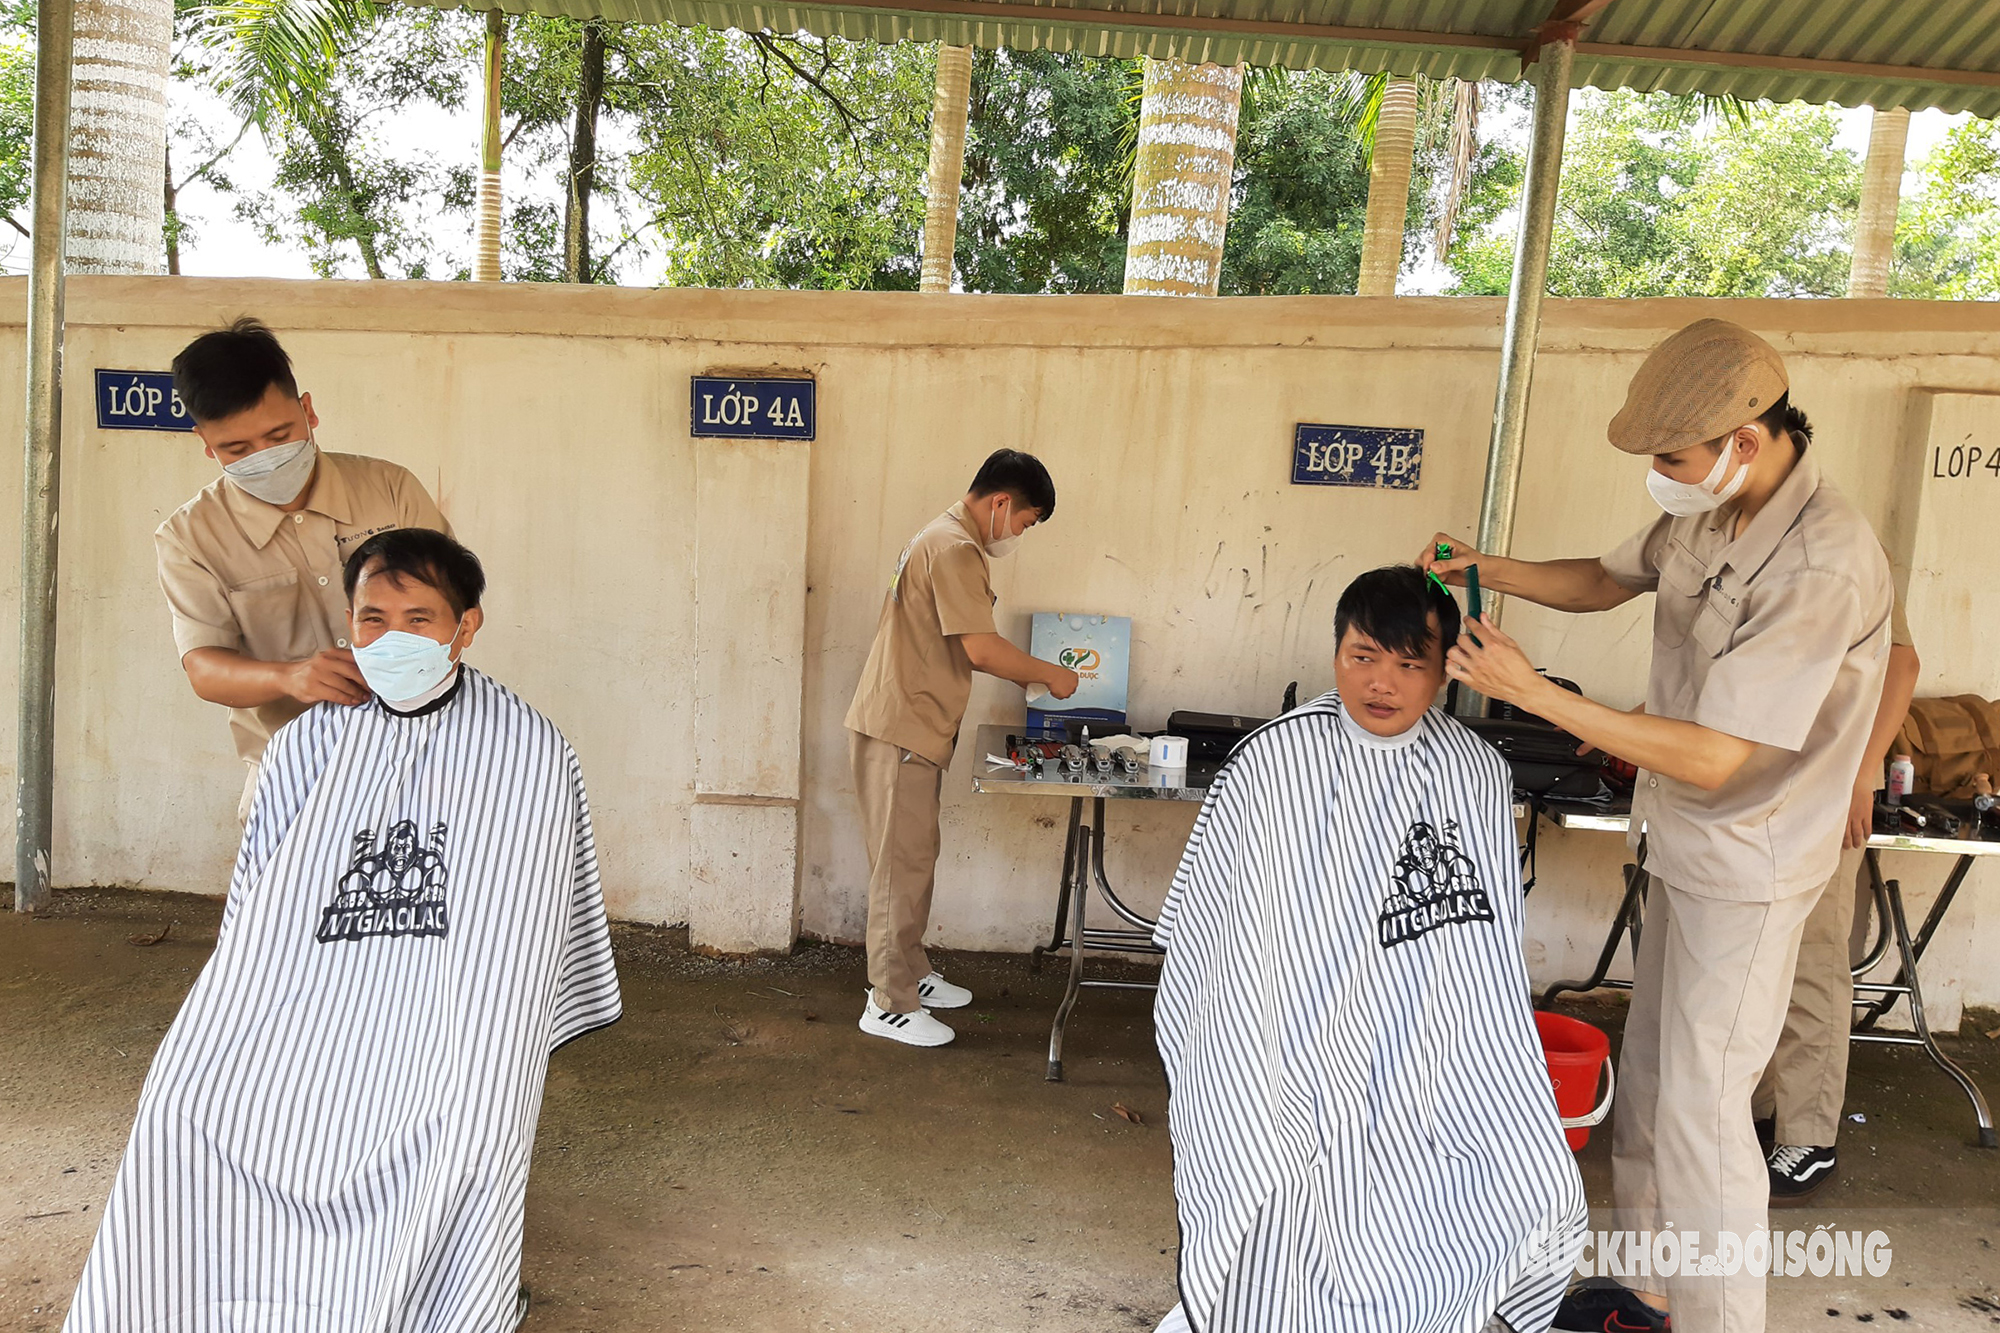  Trong chương trình, người dân xã Tân Sỏi, huyện Yên Thế còn được các tình nguyện viên trong đoàn cắt tóc miễn phí. Chương trình 'Khám bệnh, tư vấn sức khỏe và phát thuốc miễn phí' là hoạt động có tính xã hội và tính cộng đồng cao đã nhận được sự chung tay góp sức đồng hành của nhiều nhà hảo tâm trên cả nước.